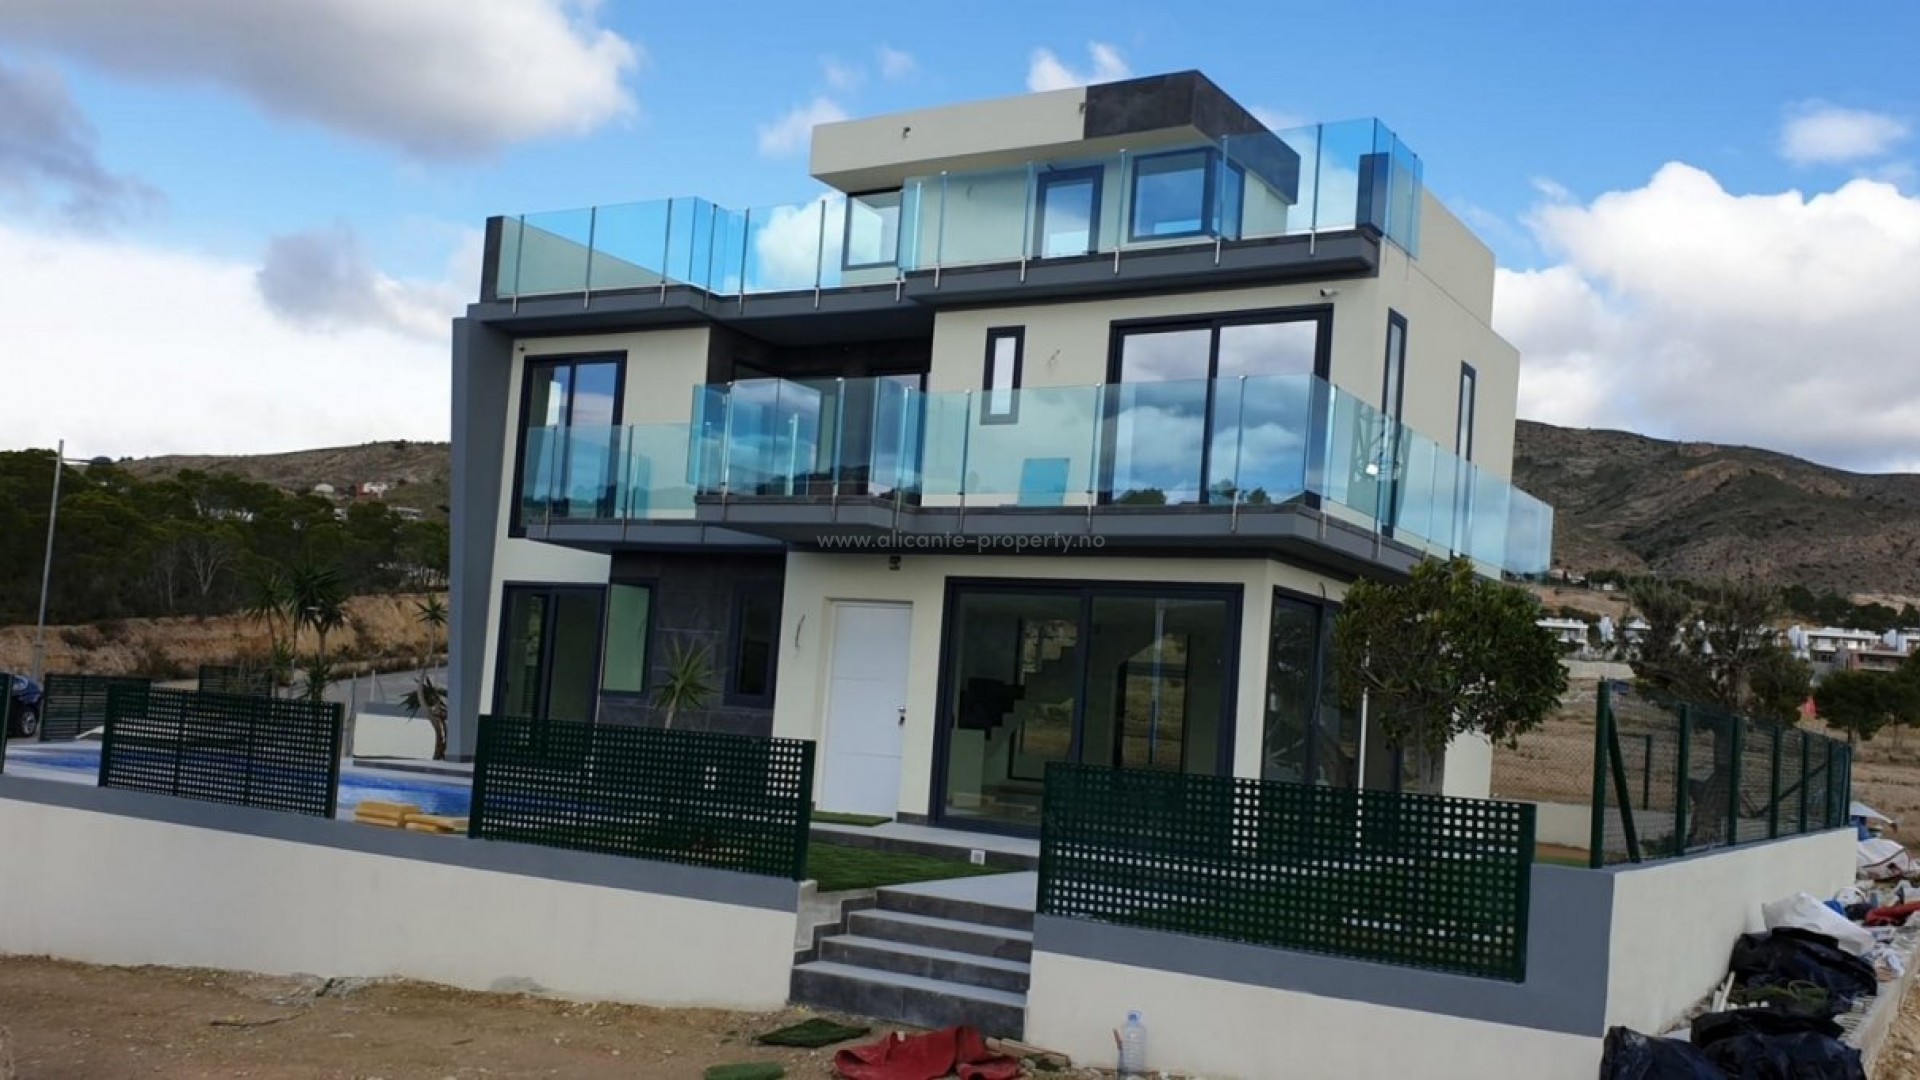 Nye villaer/hus i Finestrat, Benidorm, 200 meter til golf, svømmebasseng, 3 soverom, 3 bad, åpen terrasse, solarium og parkeringsplass for 2 biler